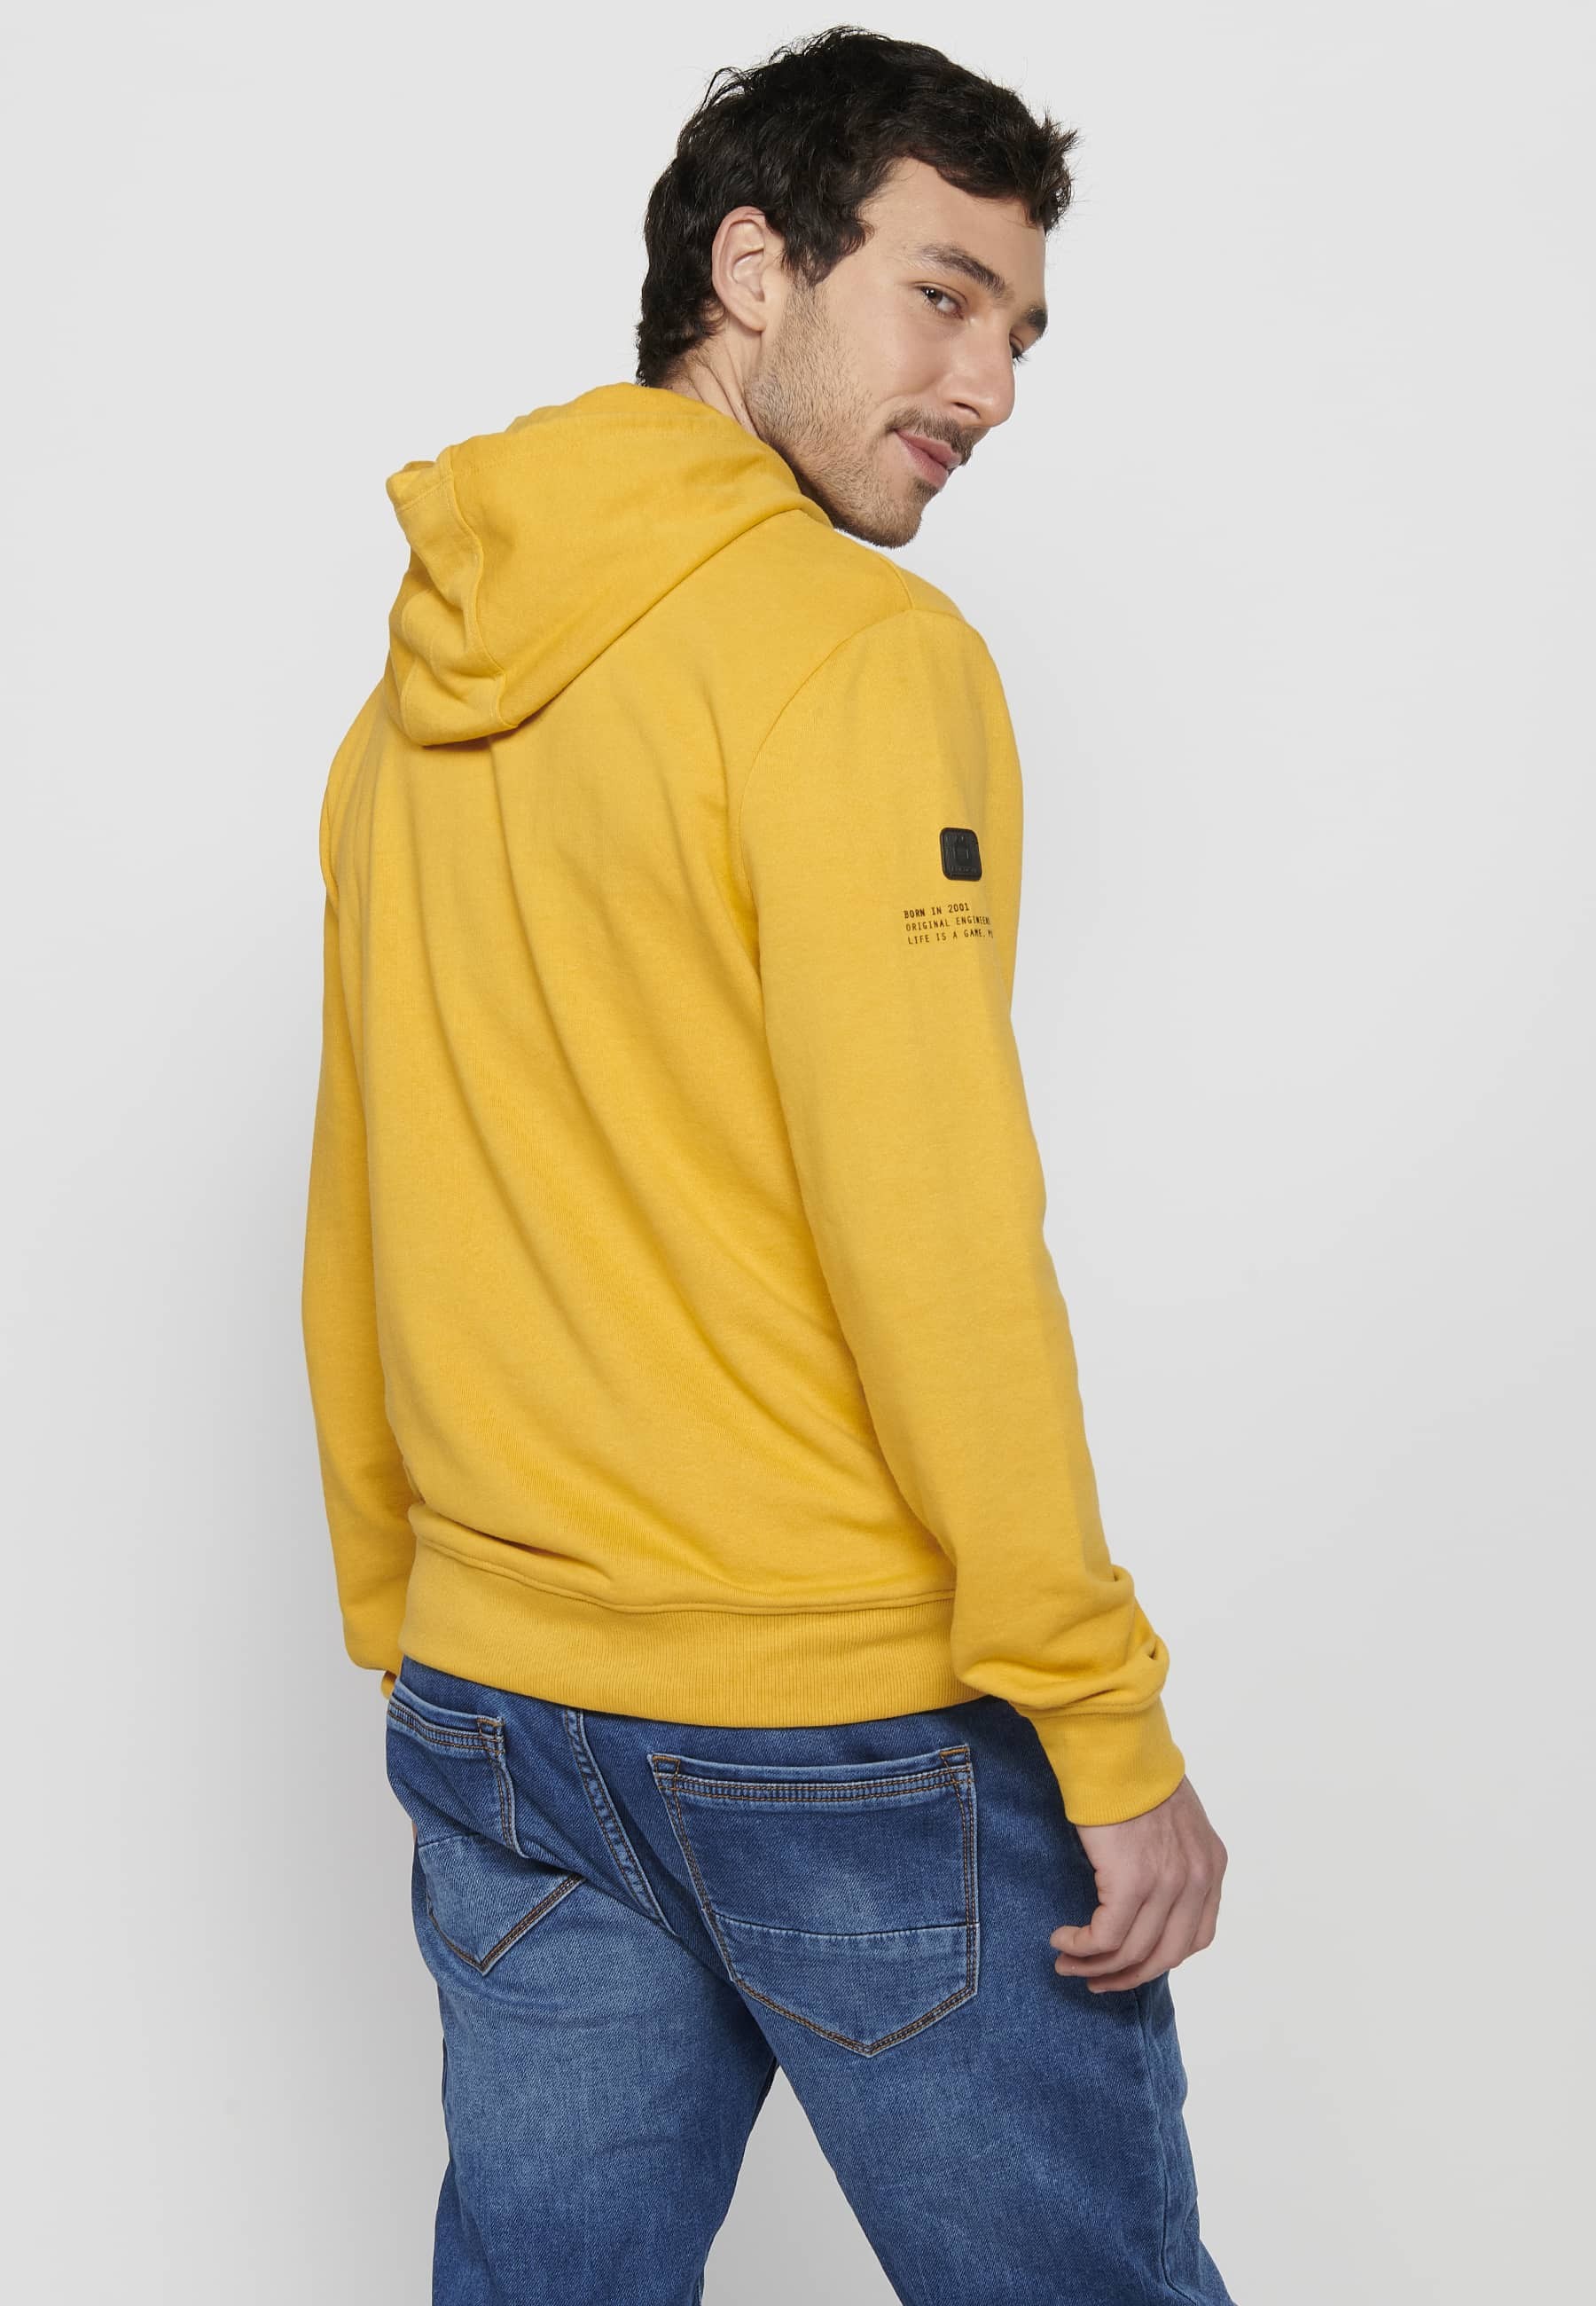 Langärmliges Sweatshirt mit gerippten Abschlüssen und Kapuzenkragen mit geprägten Buchstaben auf der Vorderseite in Gelb für Herren 6